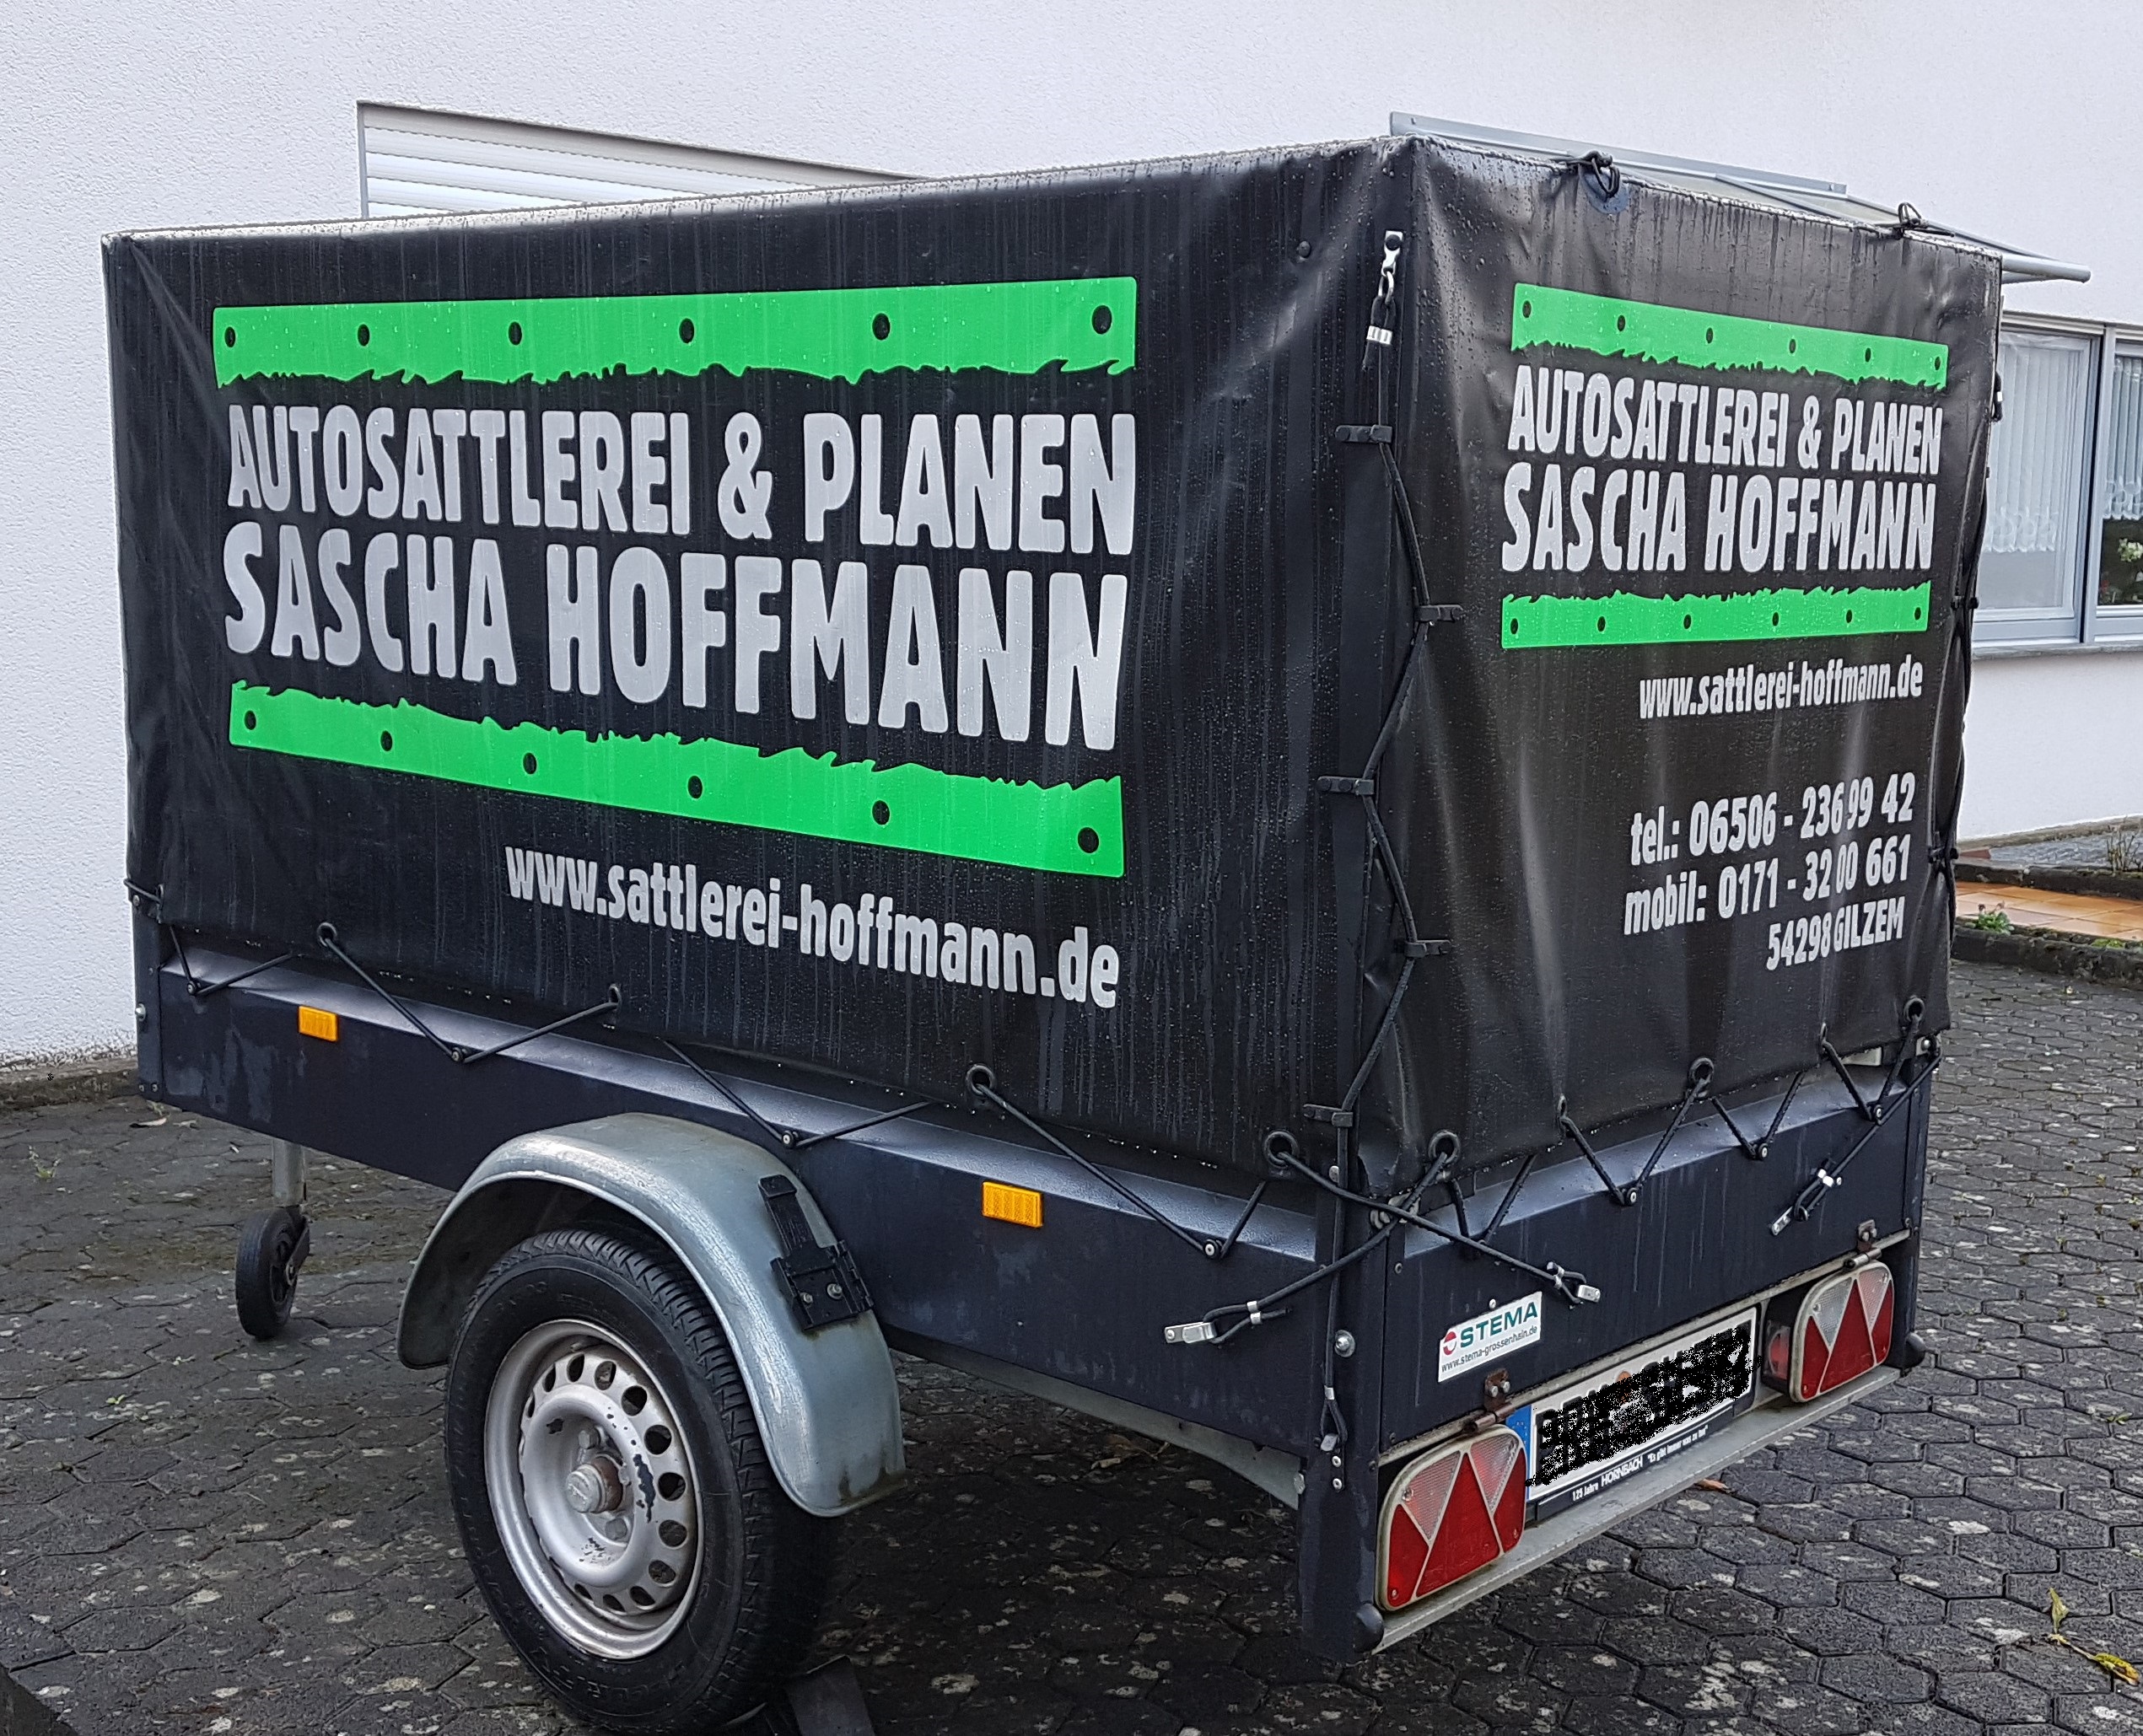 Autosattlerei & Planen Sascha Hoffmann - Mercedes W124 Coupe